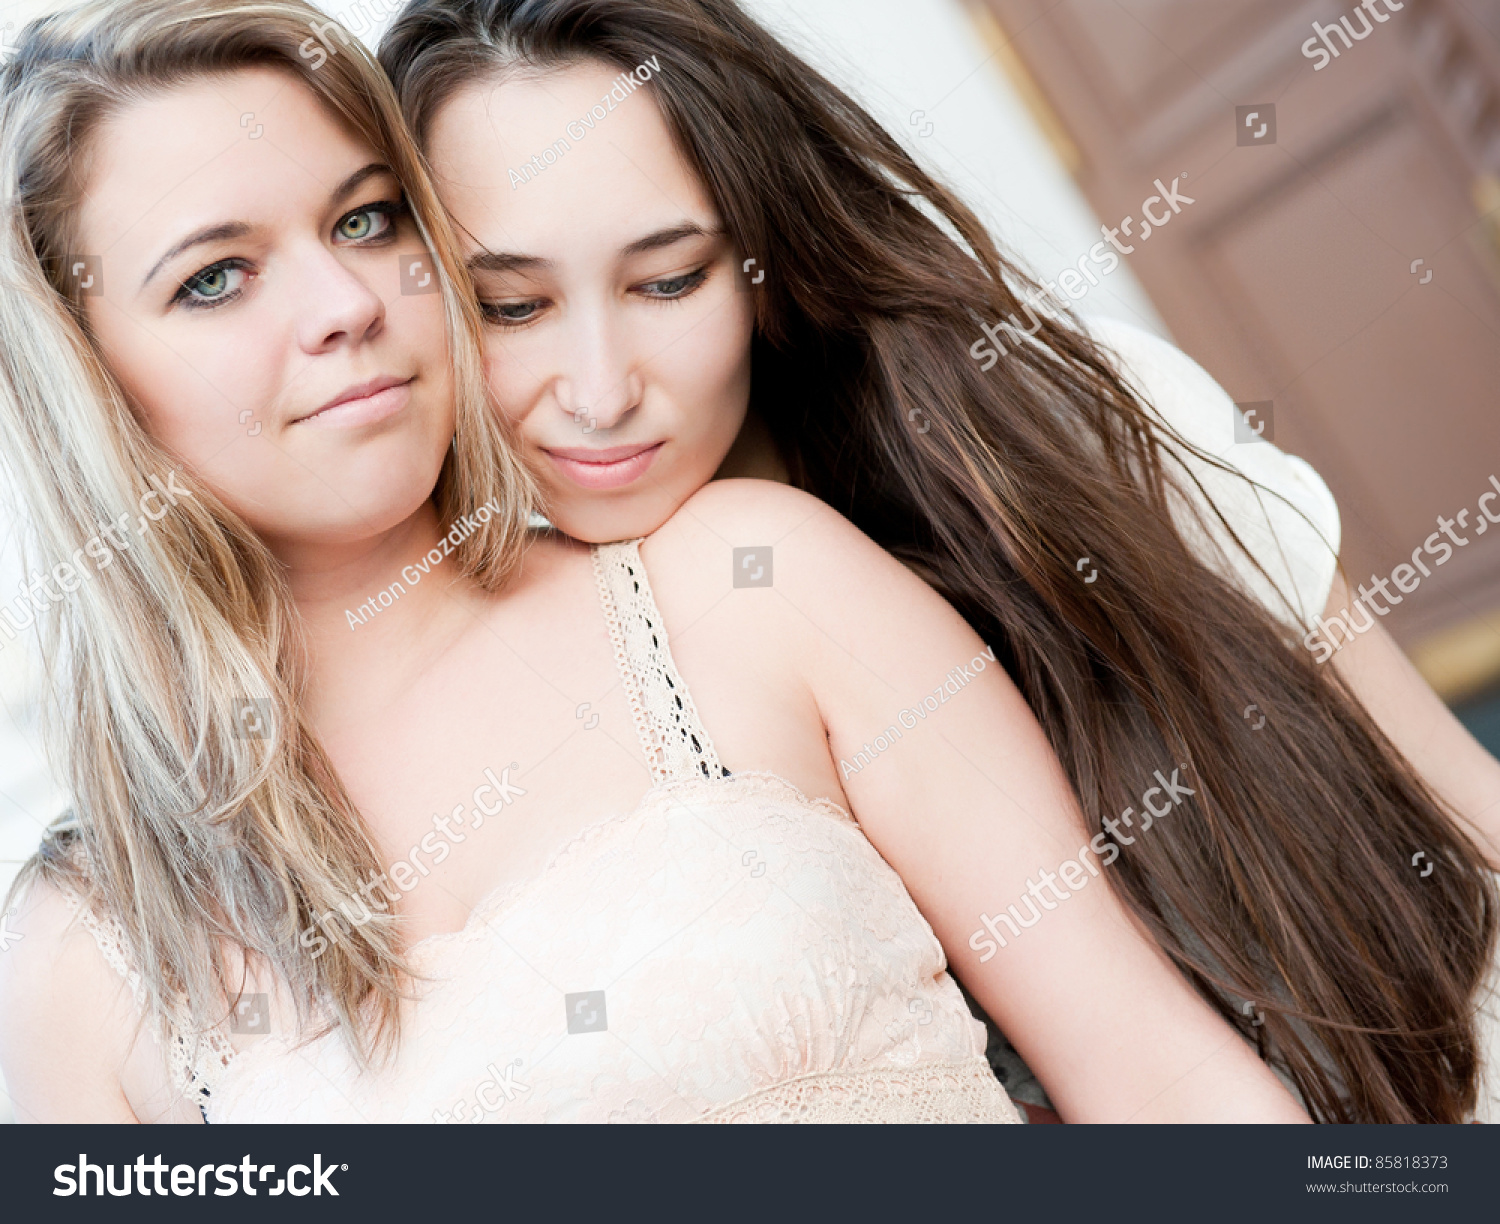 con kourtis share sexy teen lesbian pics photos